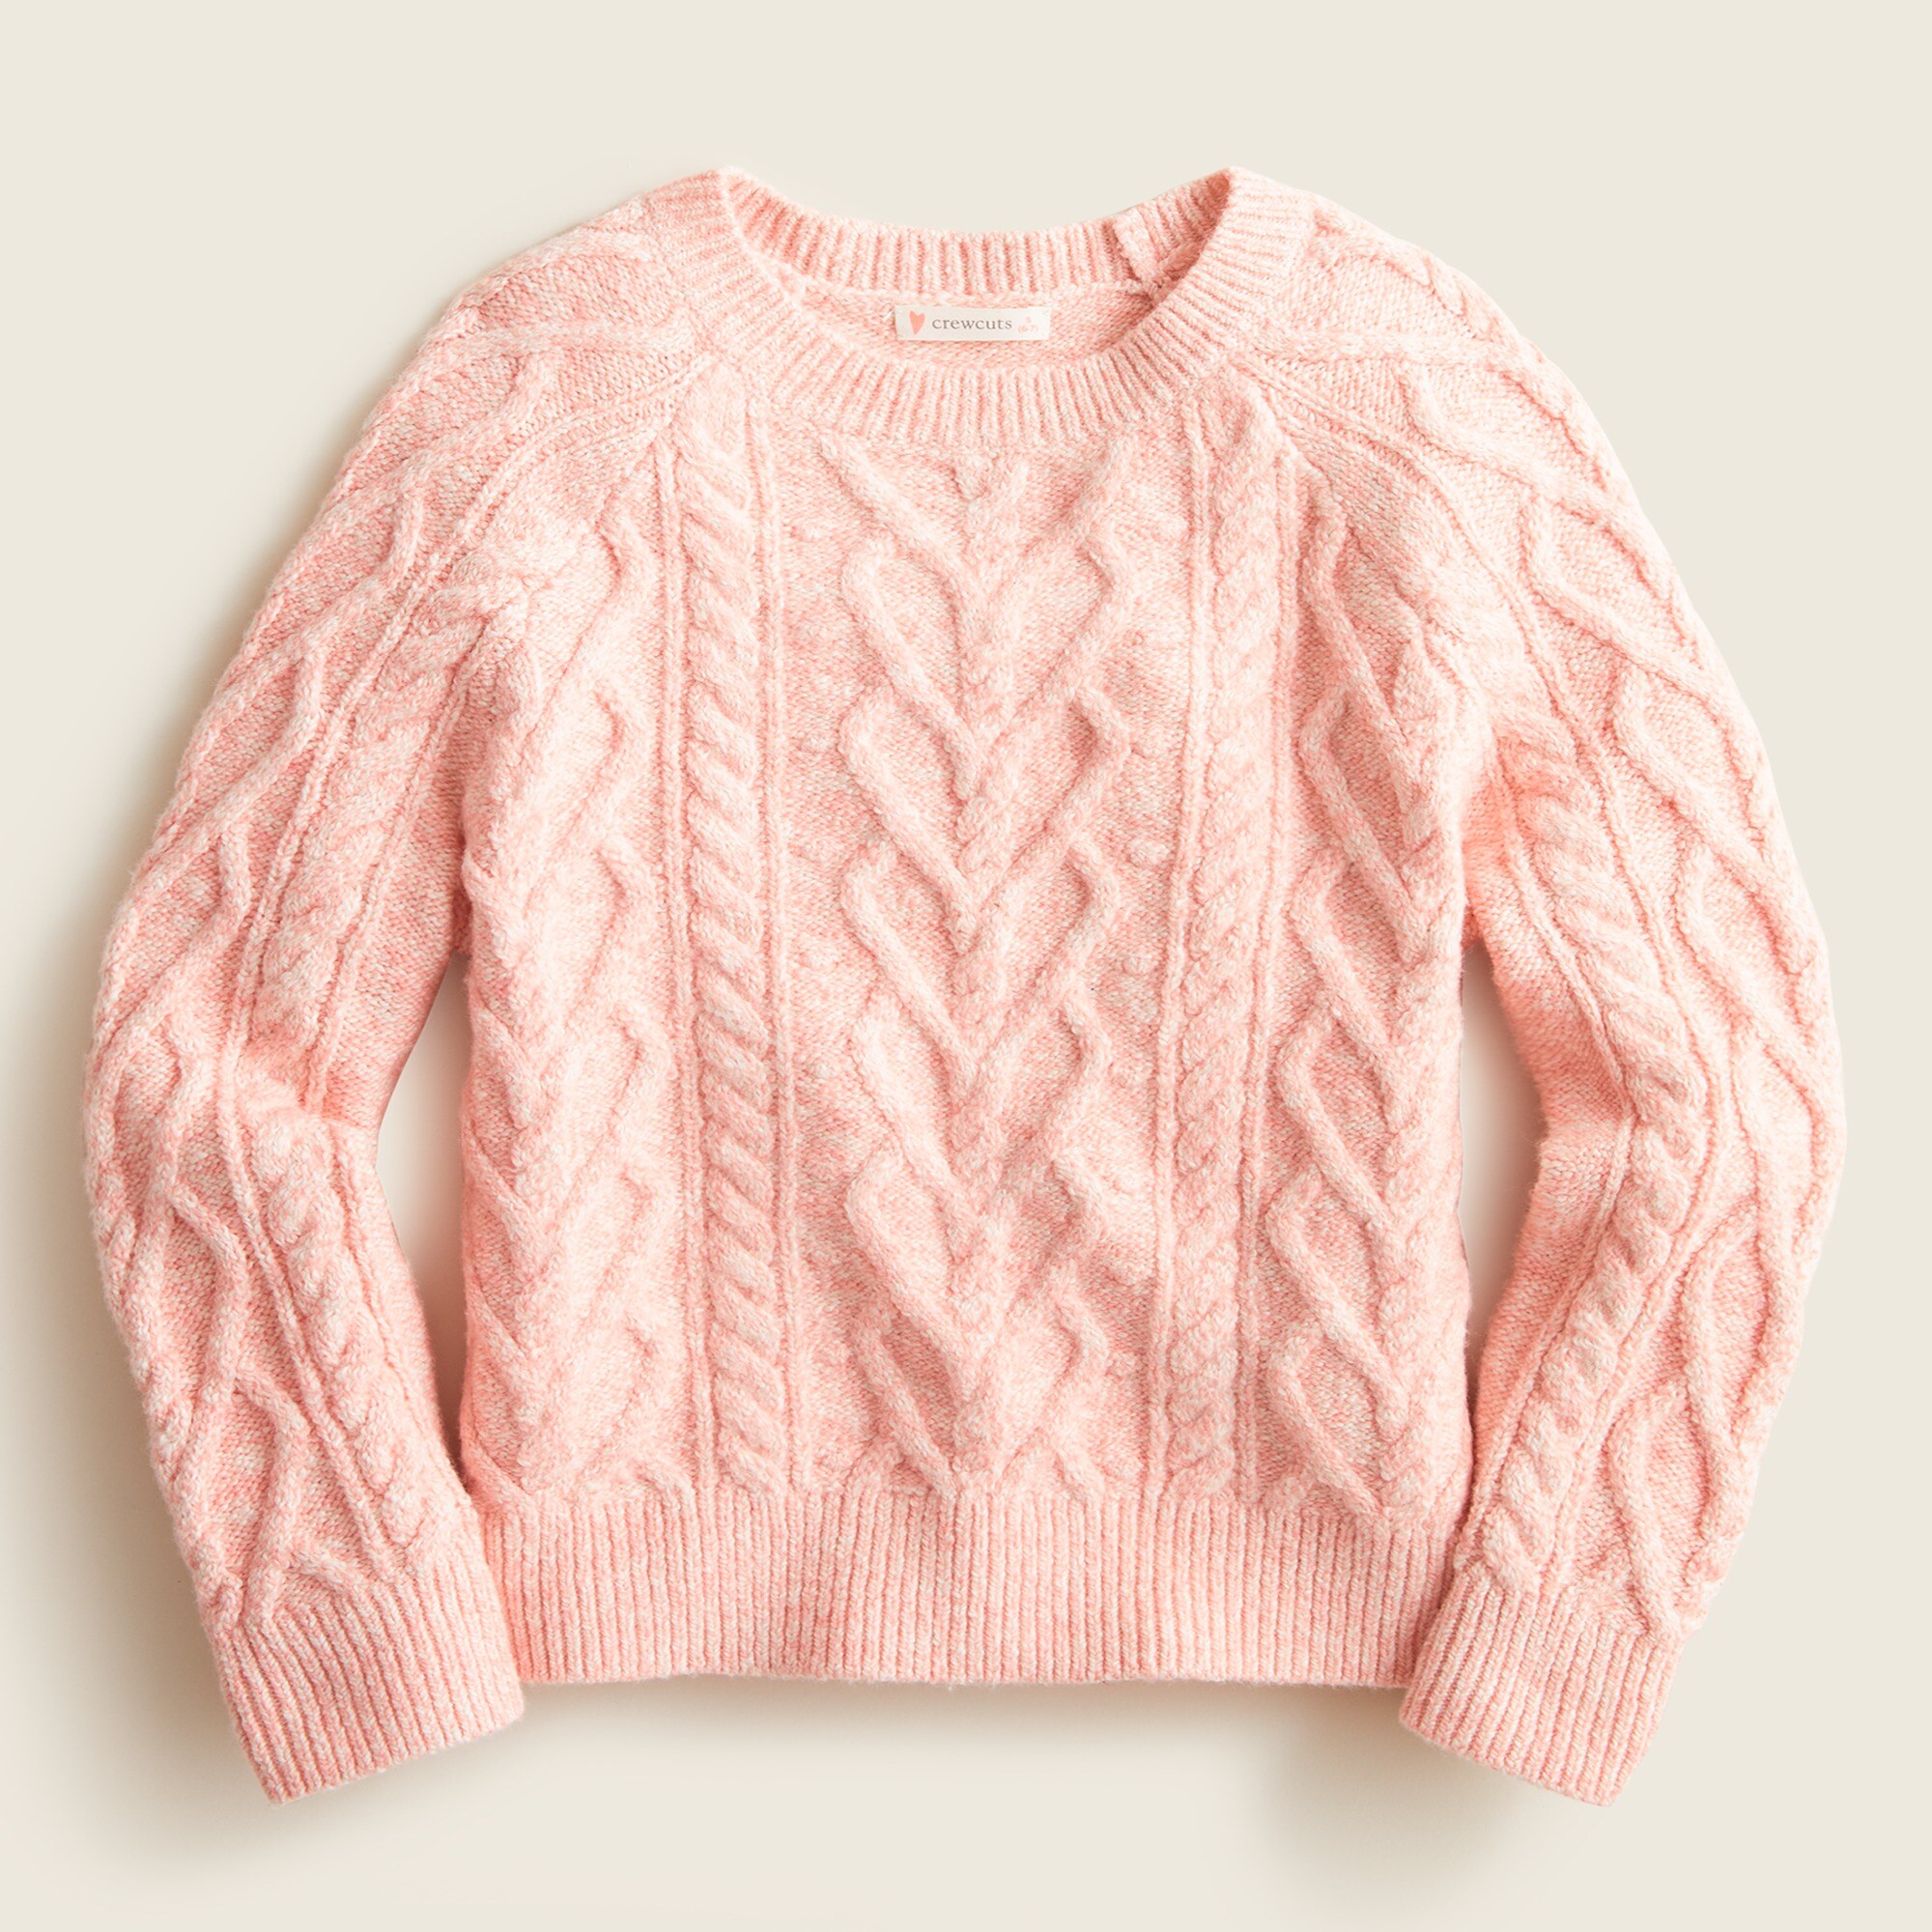 제이크루 걸즈 스웨터 J.Crew Girls heart cable-knit sweater,HEATHER BOUQUET PINK